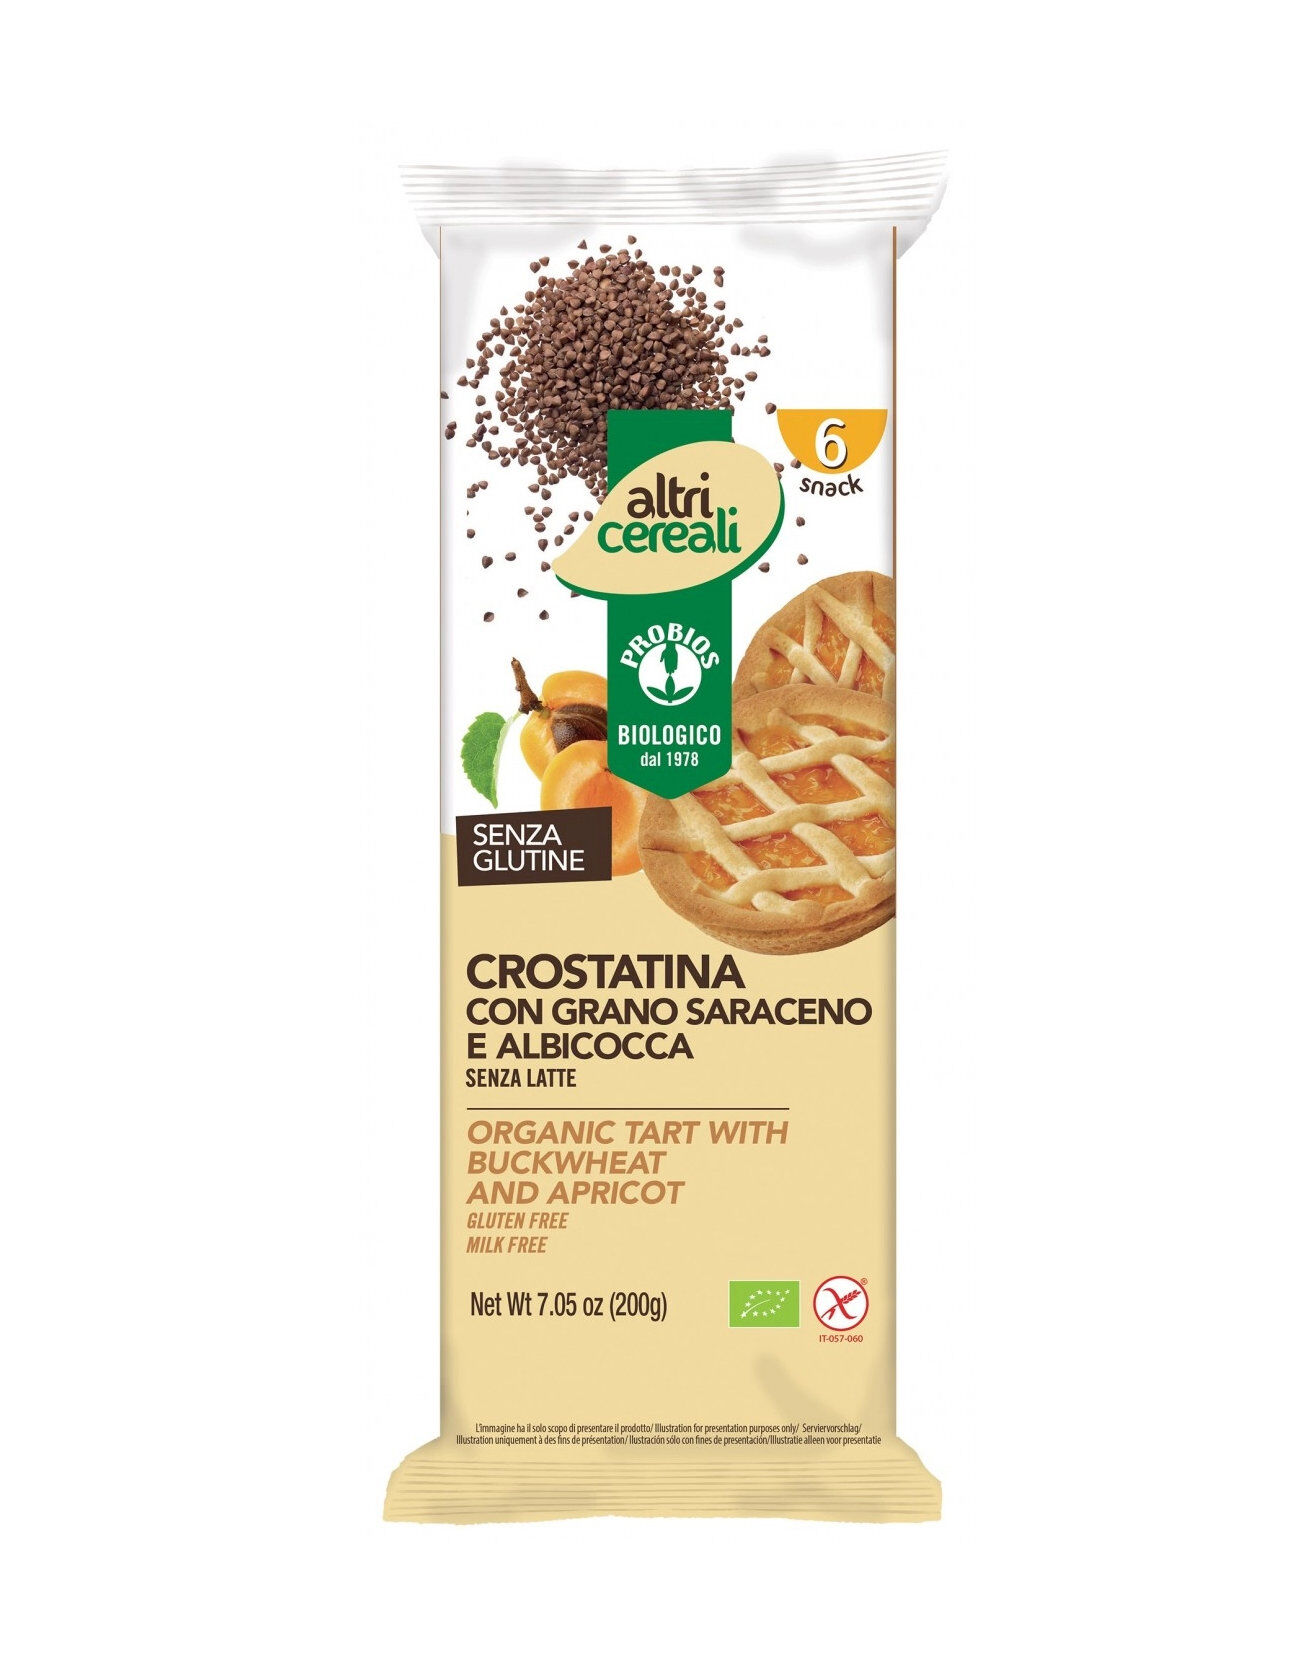 probios altri cereali - crostatina con grano saraceno e albicocca 6 crostatine da 33,4 grammi